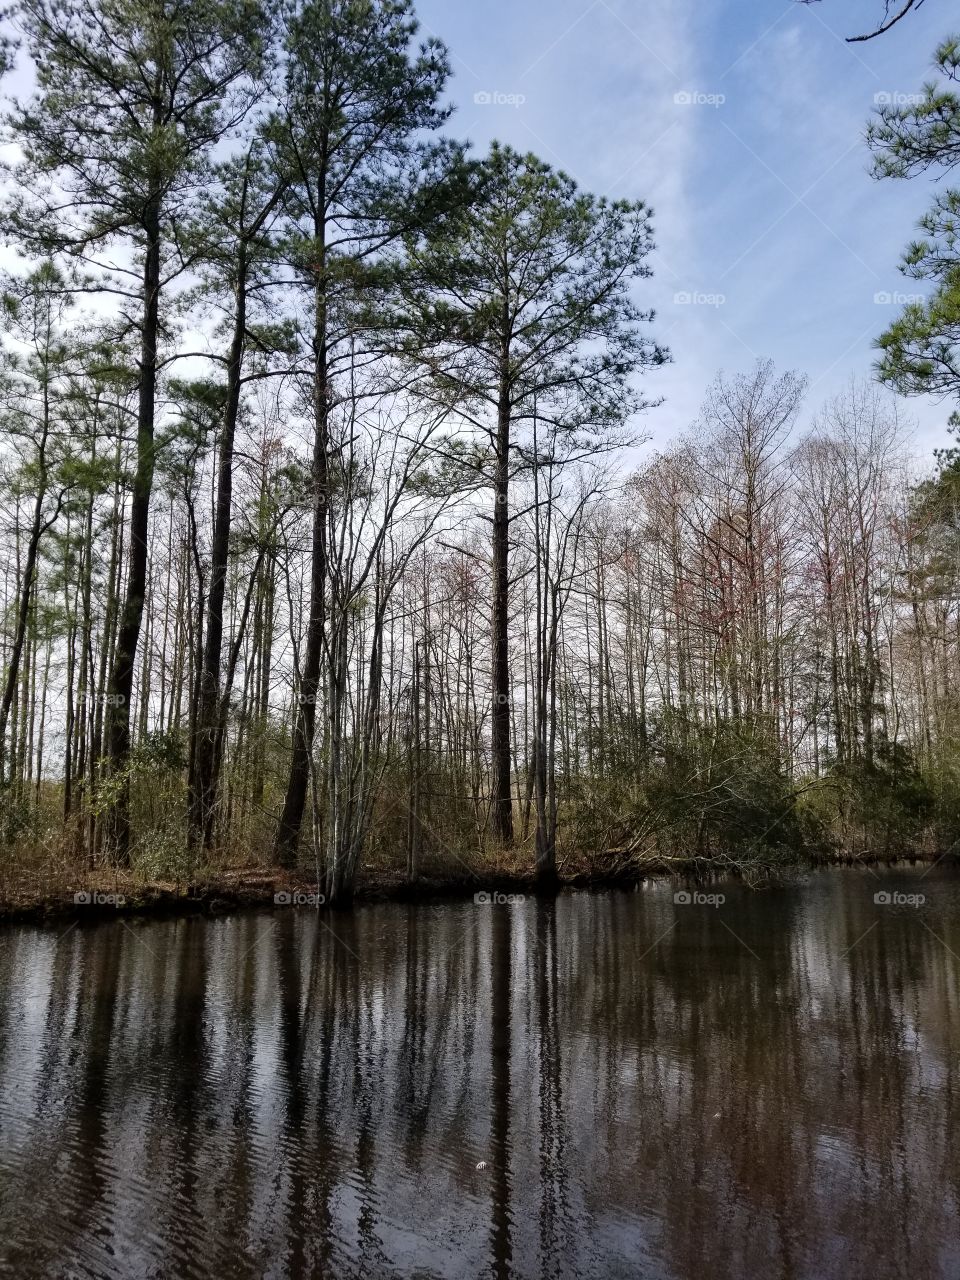 North Carolina Wildlife Waterway Fishing with the Pines